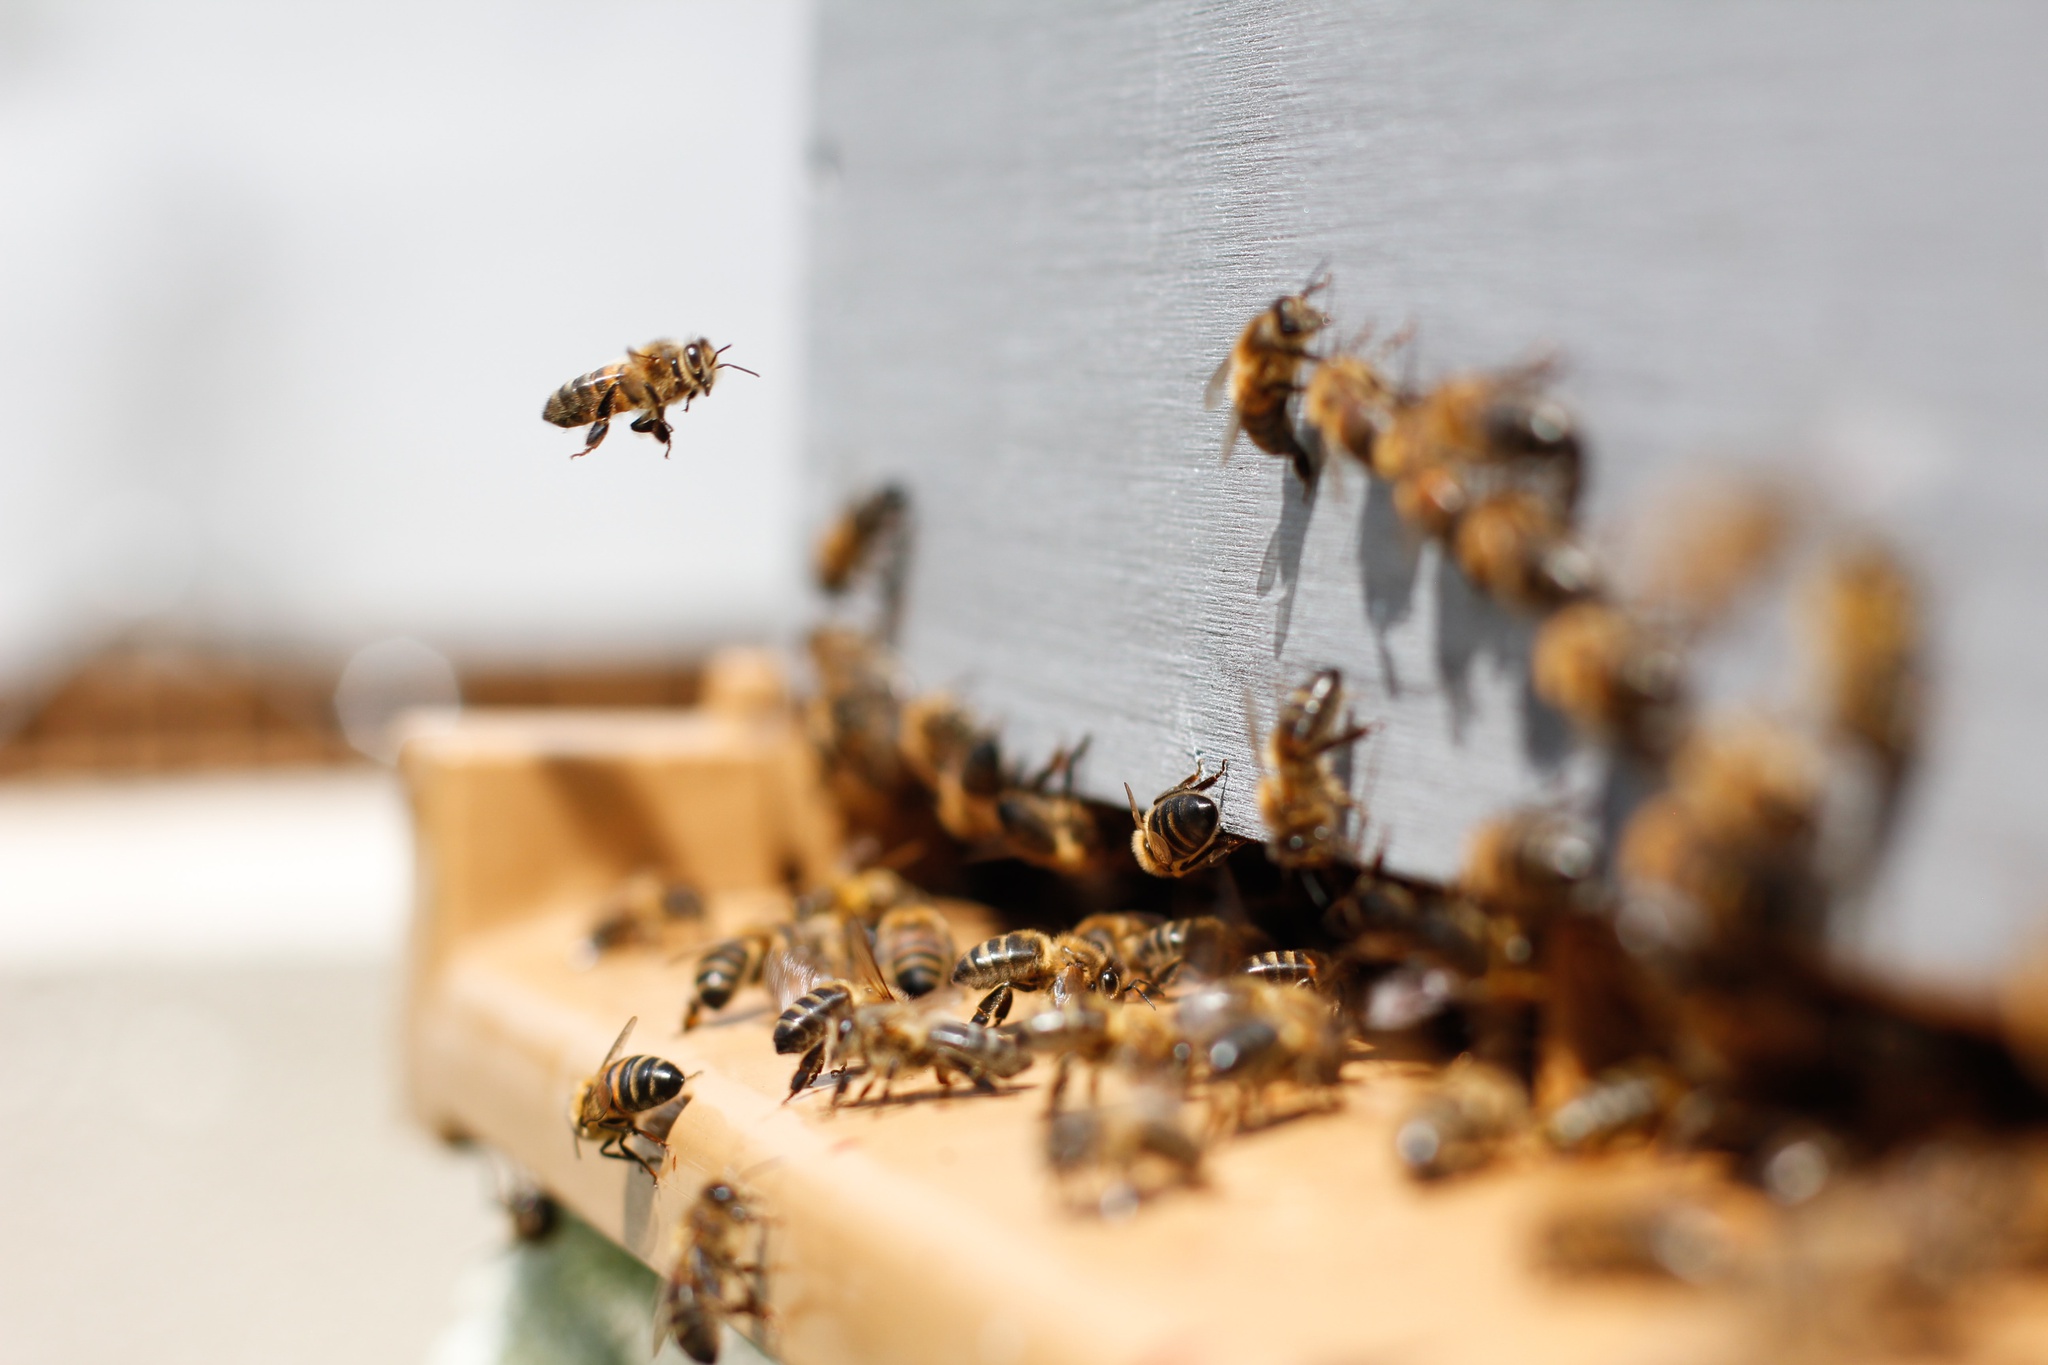 Des étudiants honnêtes mettront en place des réseaux pour surveiller les abeilles, le bruit et la prospérité |  Alentours